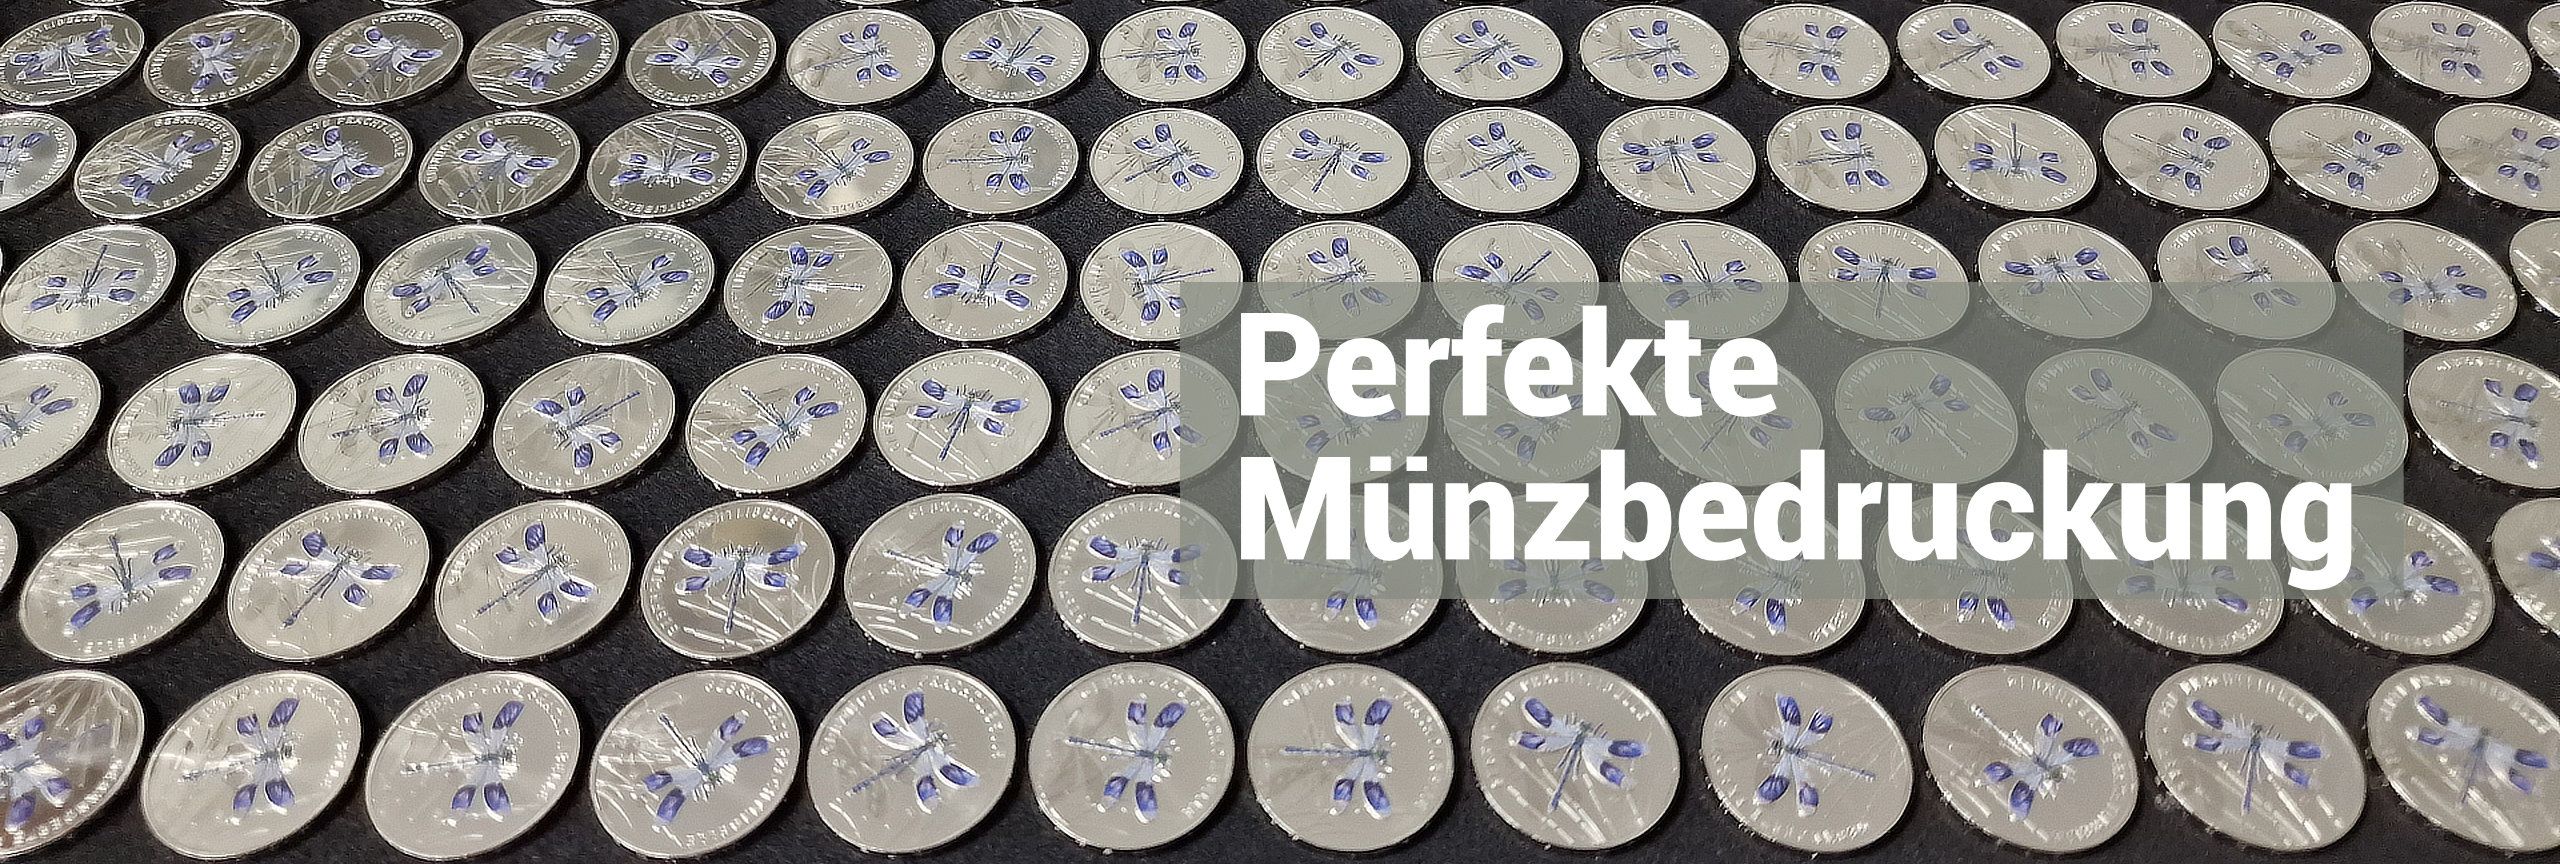 Tablett mit bedruckten Euromünzen Prachtlibelle